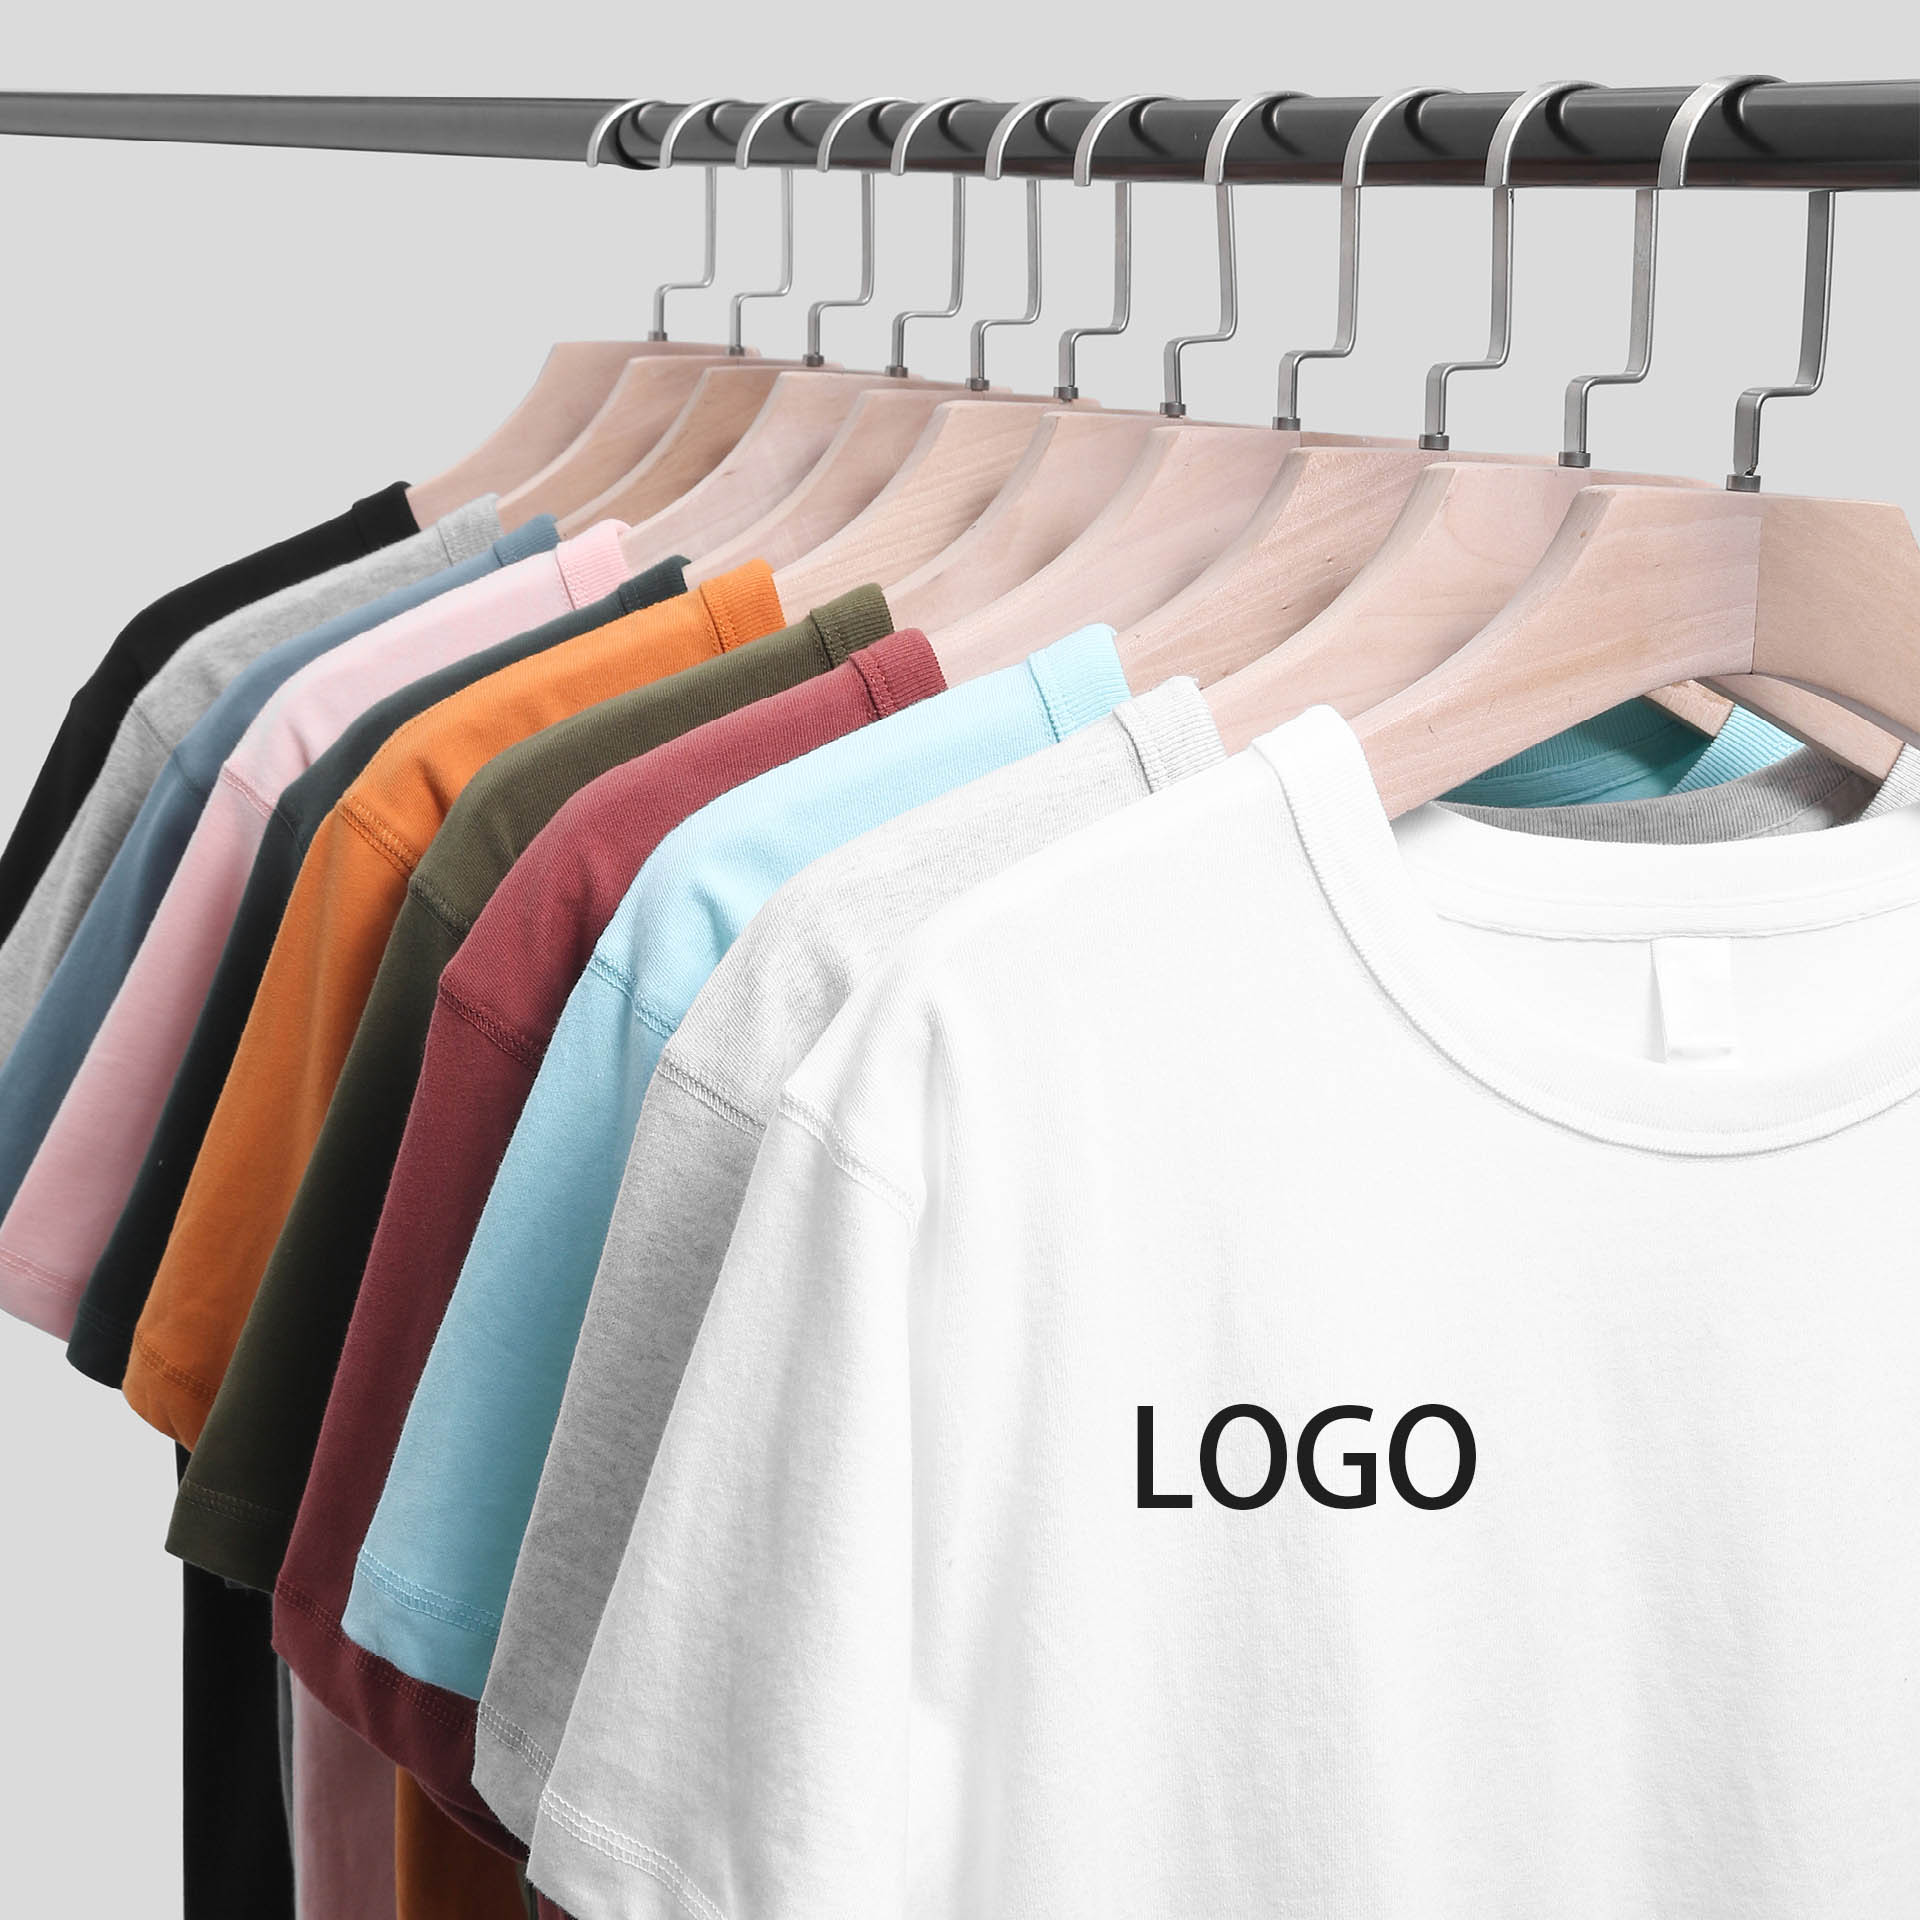 100% cotton high quality custom printing blank t shirt size s m l xl 2xl 3xl 4xl 5xl 6xl drop shoulder graphic t-shirt for men